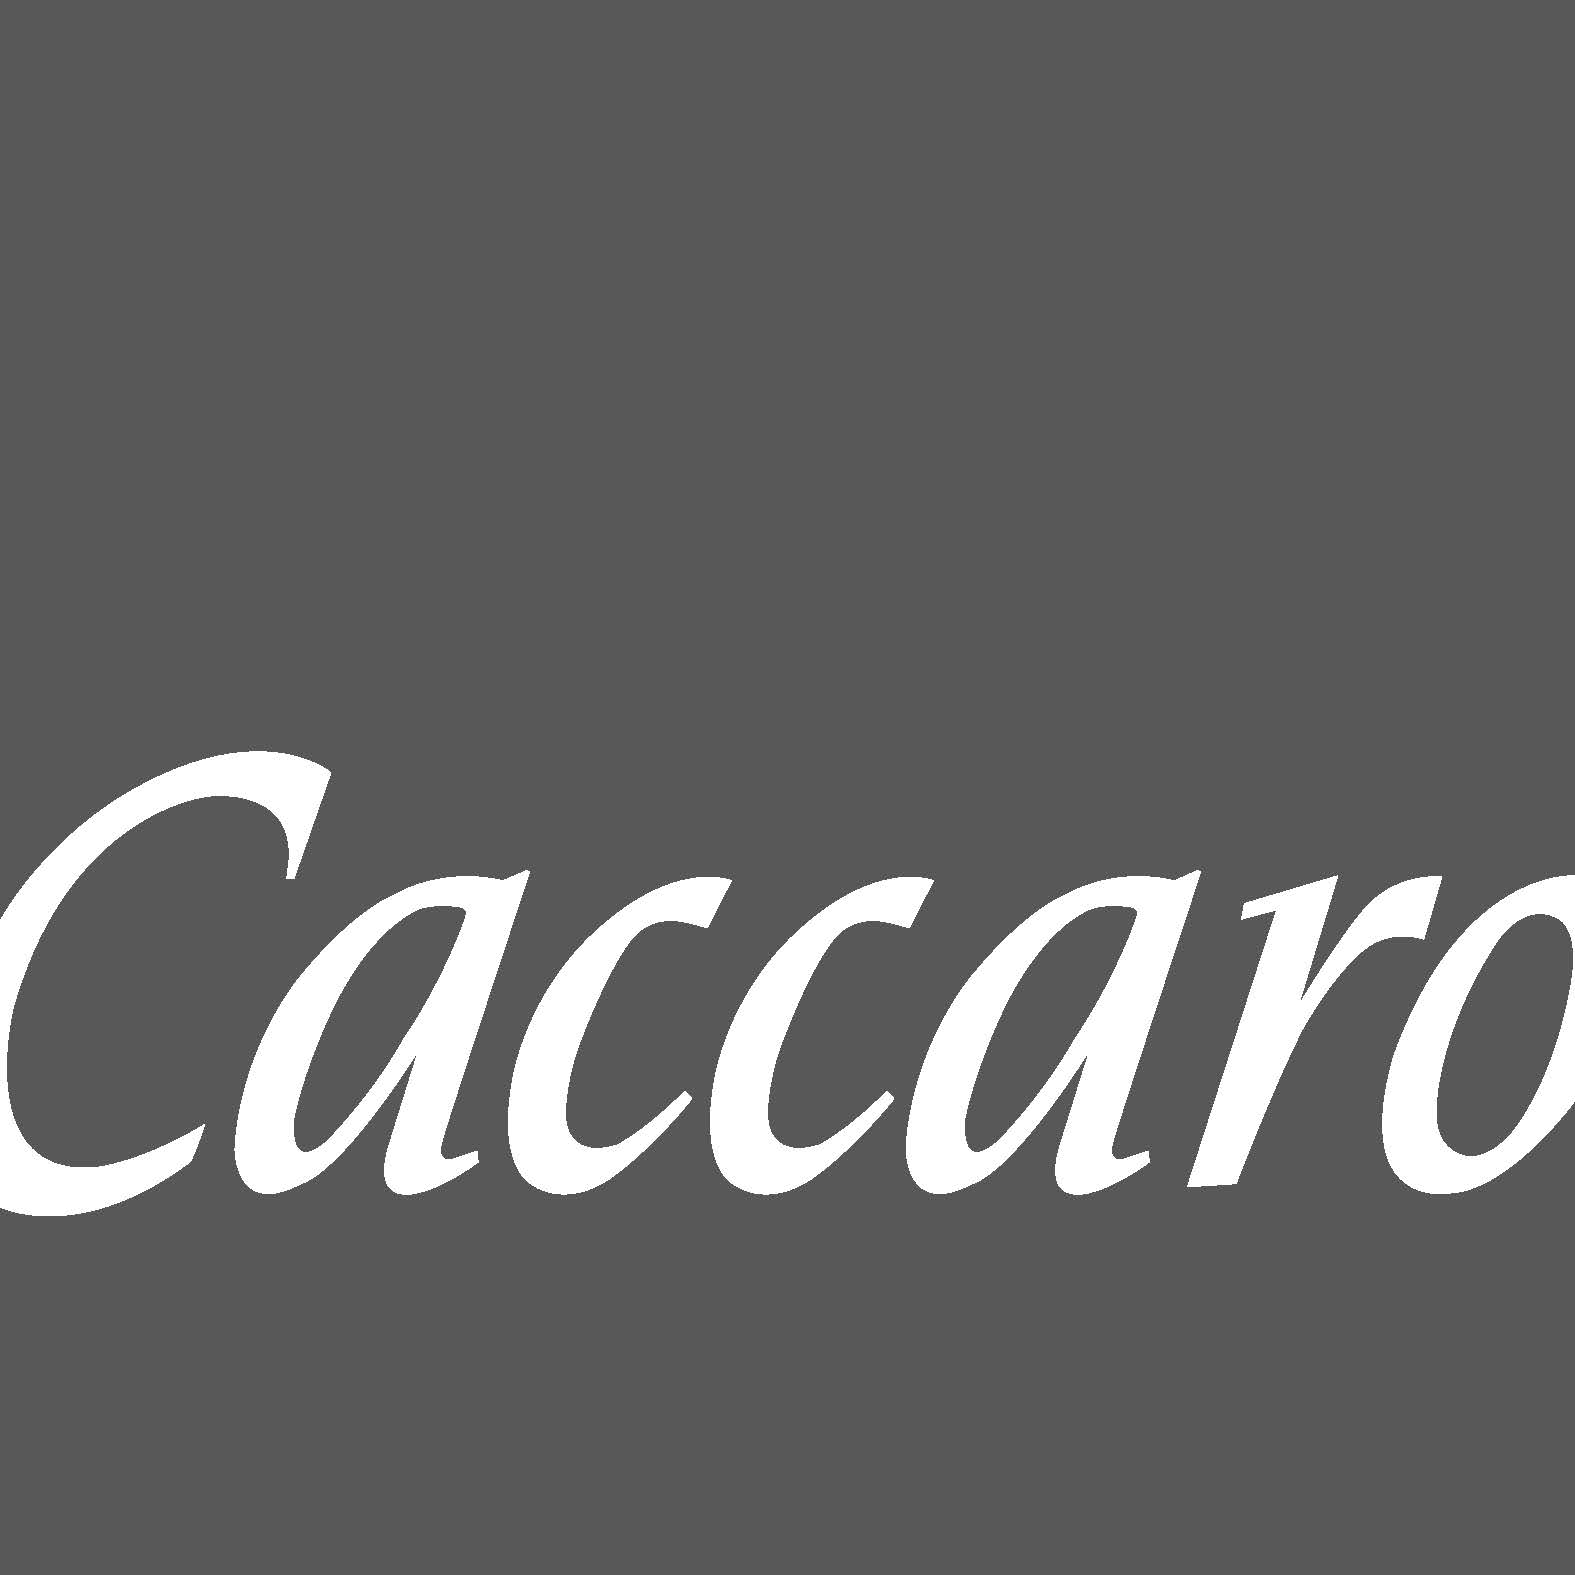 Immagine inerente al logo del produttore Caccaro zona notte